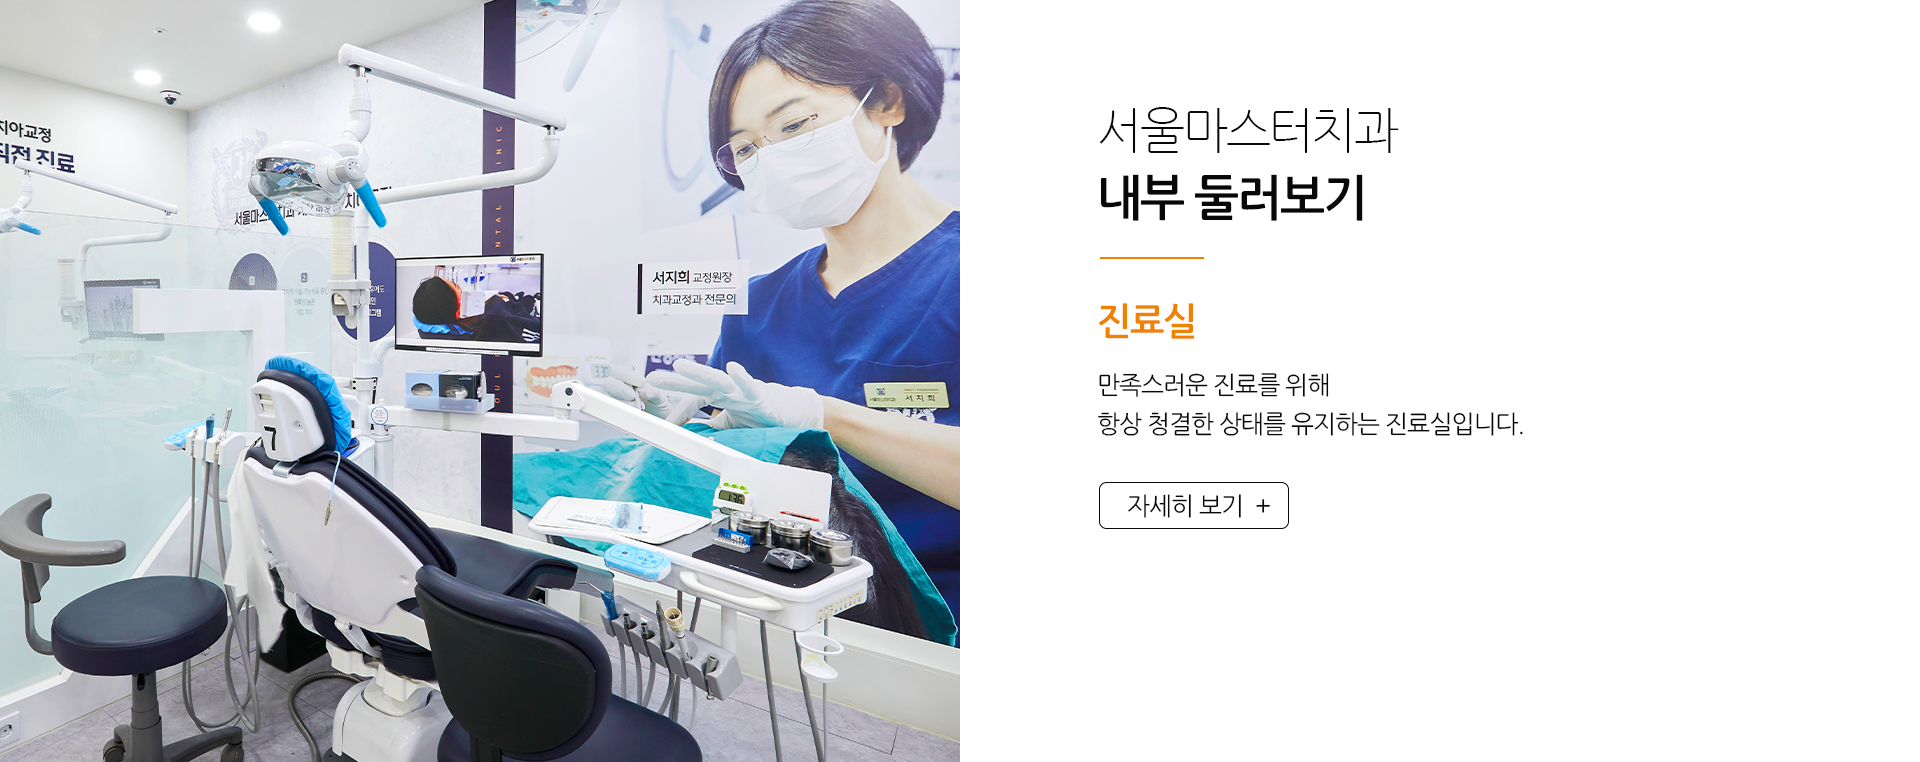 서울마스터치과-내부-둘러보기-진료실-만족스러운-진료를-위해-항상-청결한-상태를-유지하는-진료실입니다